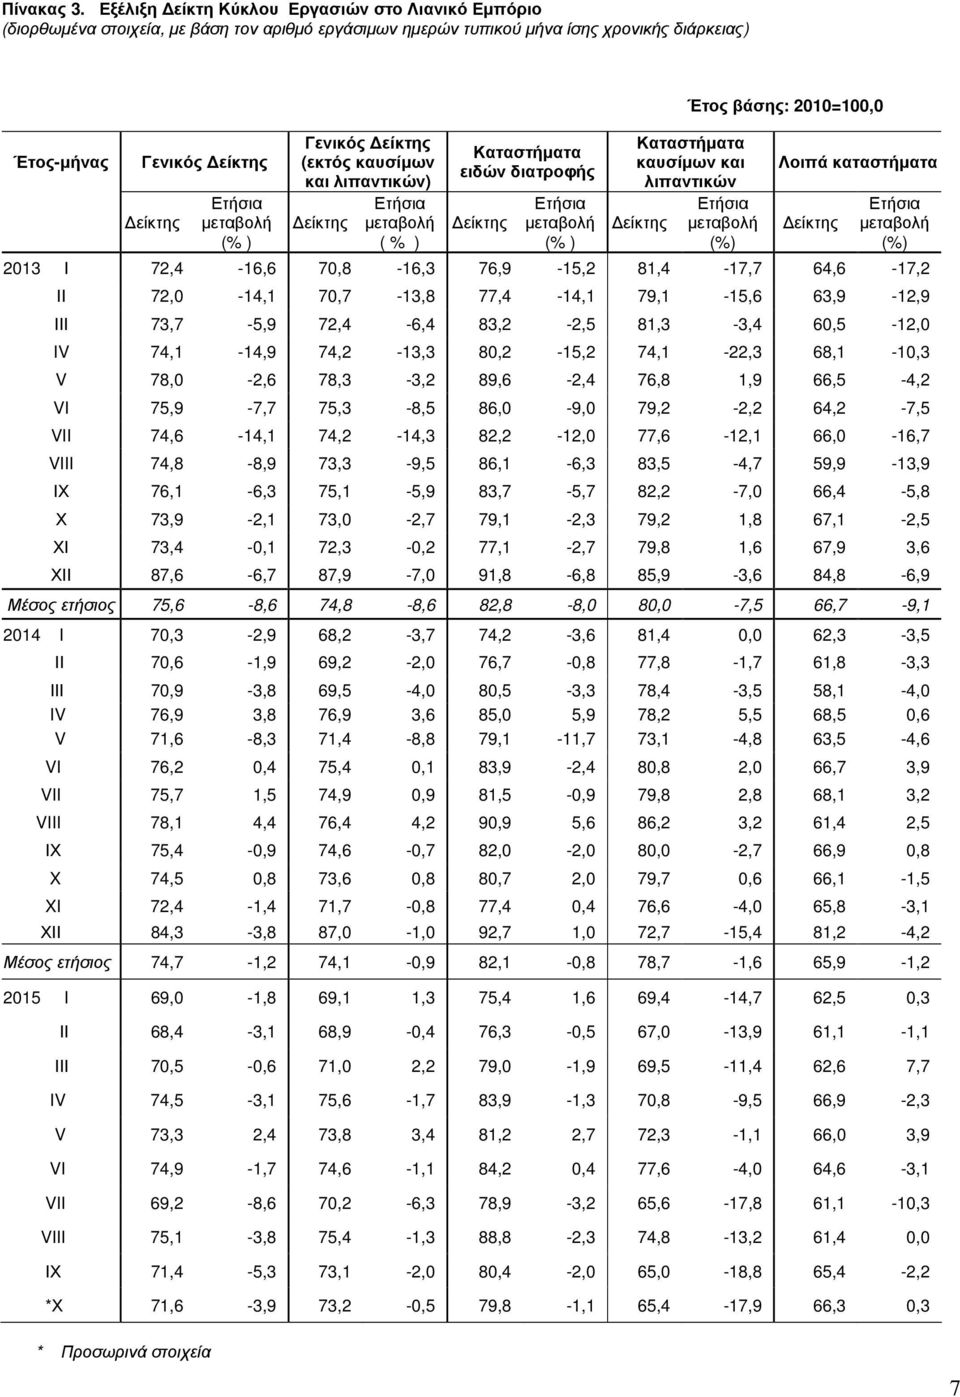 λιπαντικών) ( % ) Καταστήµατα ειδών διατροφής Καταστήµατα καυσίµων και λιπαντικών Έτος βάσης: 2010=100,0 Λοιπά καταστήµατα 2013 Ι 72,4-16,6 70,8-16,3 76,9-15,2 81,4-17,7 64,6-17,2 ΙΙ 72,0-14,1